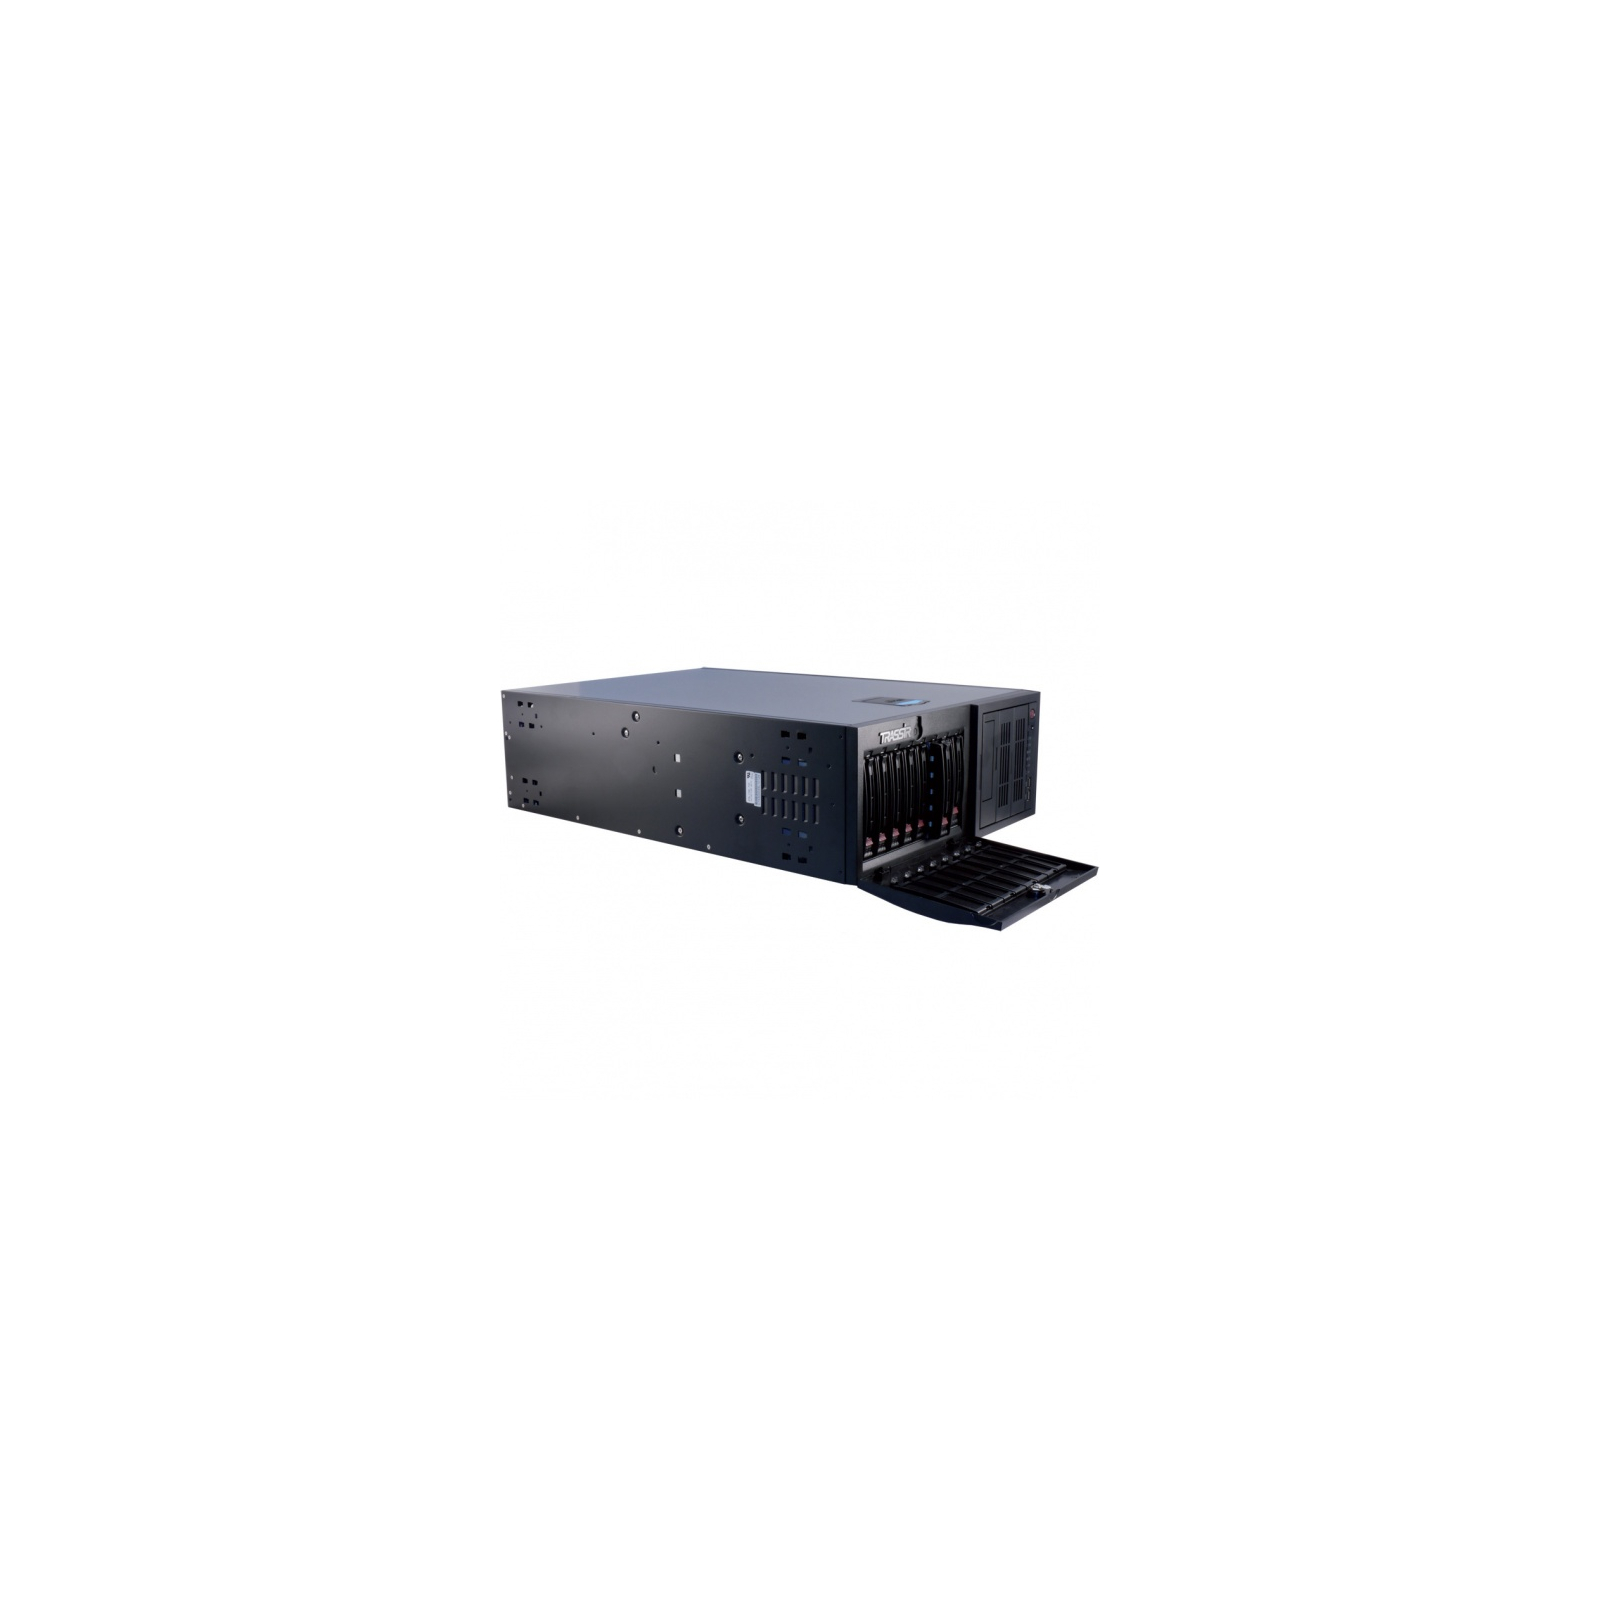 Регистратор для видеонаблюдения DSSL TRASSIR QuattroStation Pro (QuattroStation Pro)